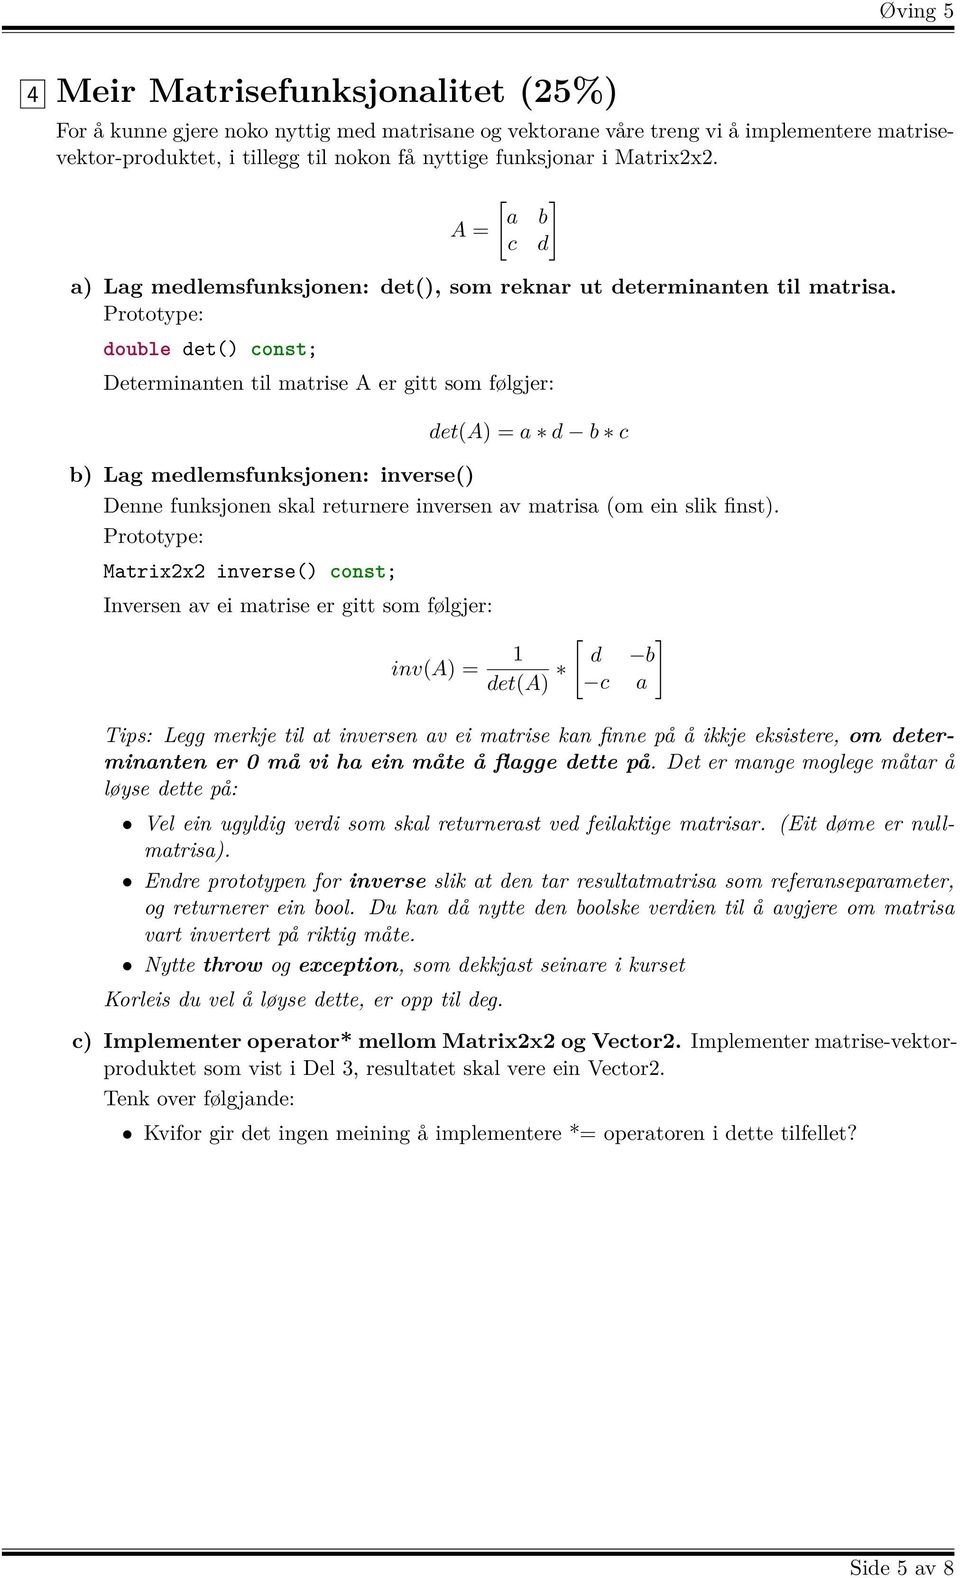 Prototype: double det() const; Determinanten til matrise A er gitt som følgjer: det(a) = a d b c b) Lag medlemsfunksjonen: inverse() Denne funksjonen skal returnere inversen av matrisa (om ein slik